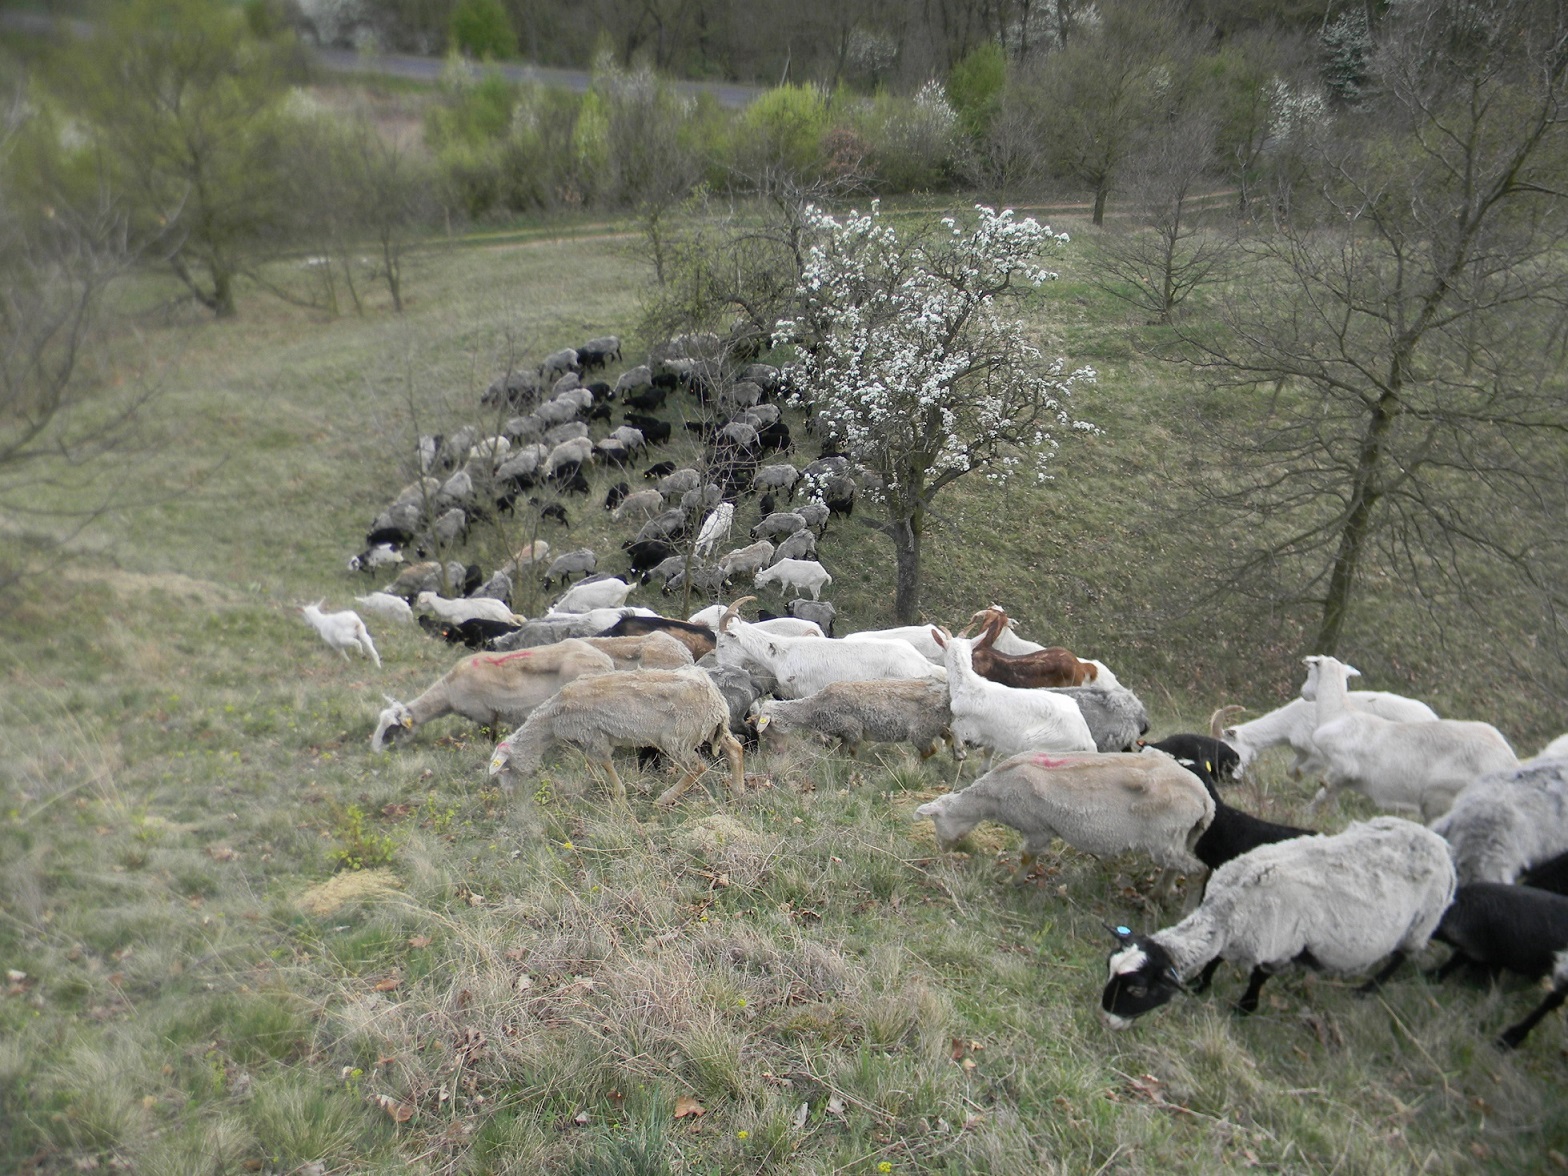 Obr. 4 Volná pastva smíšeného stáda ovcí a koz, jež každoročně probíhá na řadě stepních lokalit ve správě Krajského úřadu Ústeckého kraje. Pouhé kosení a výřezy dřevin zpravidla nevedou k dlouhodobému udržení příznivého stavu biotopů, neboť zajistí pouze jednorázové, neselektivní odstranění biomasy bez dostatečného narušování půdního povrchu, nezbytného jak pro vznik mikrostanovišť vhodných k uchycování konkurenčně slabších druhů rostlin, tak i pro vznik a udržování vhodných biotopů pro mnohé druhy hmyzu. To v dlouhodobém časovém horizontu zajistí právě uvedená pastva. Foto Radovan Douša